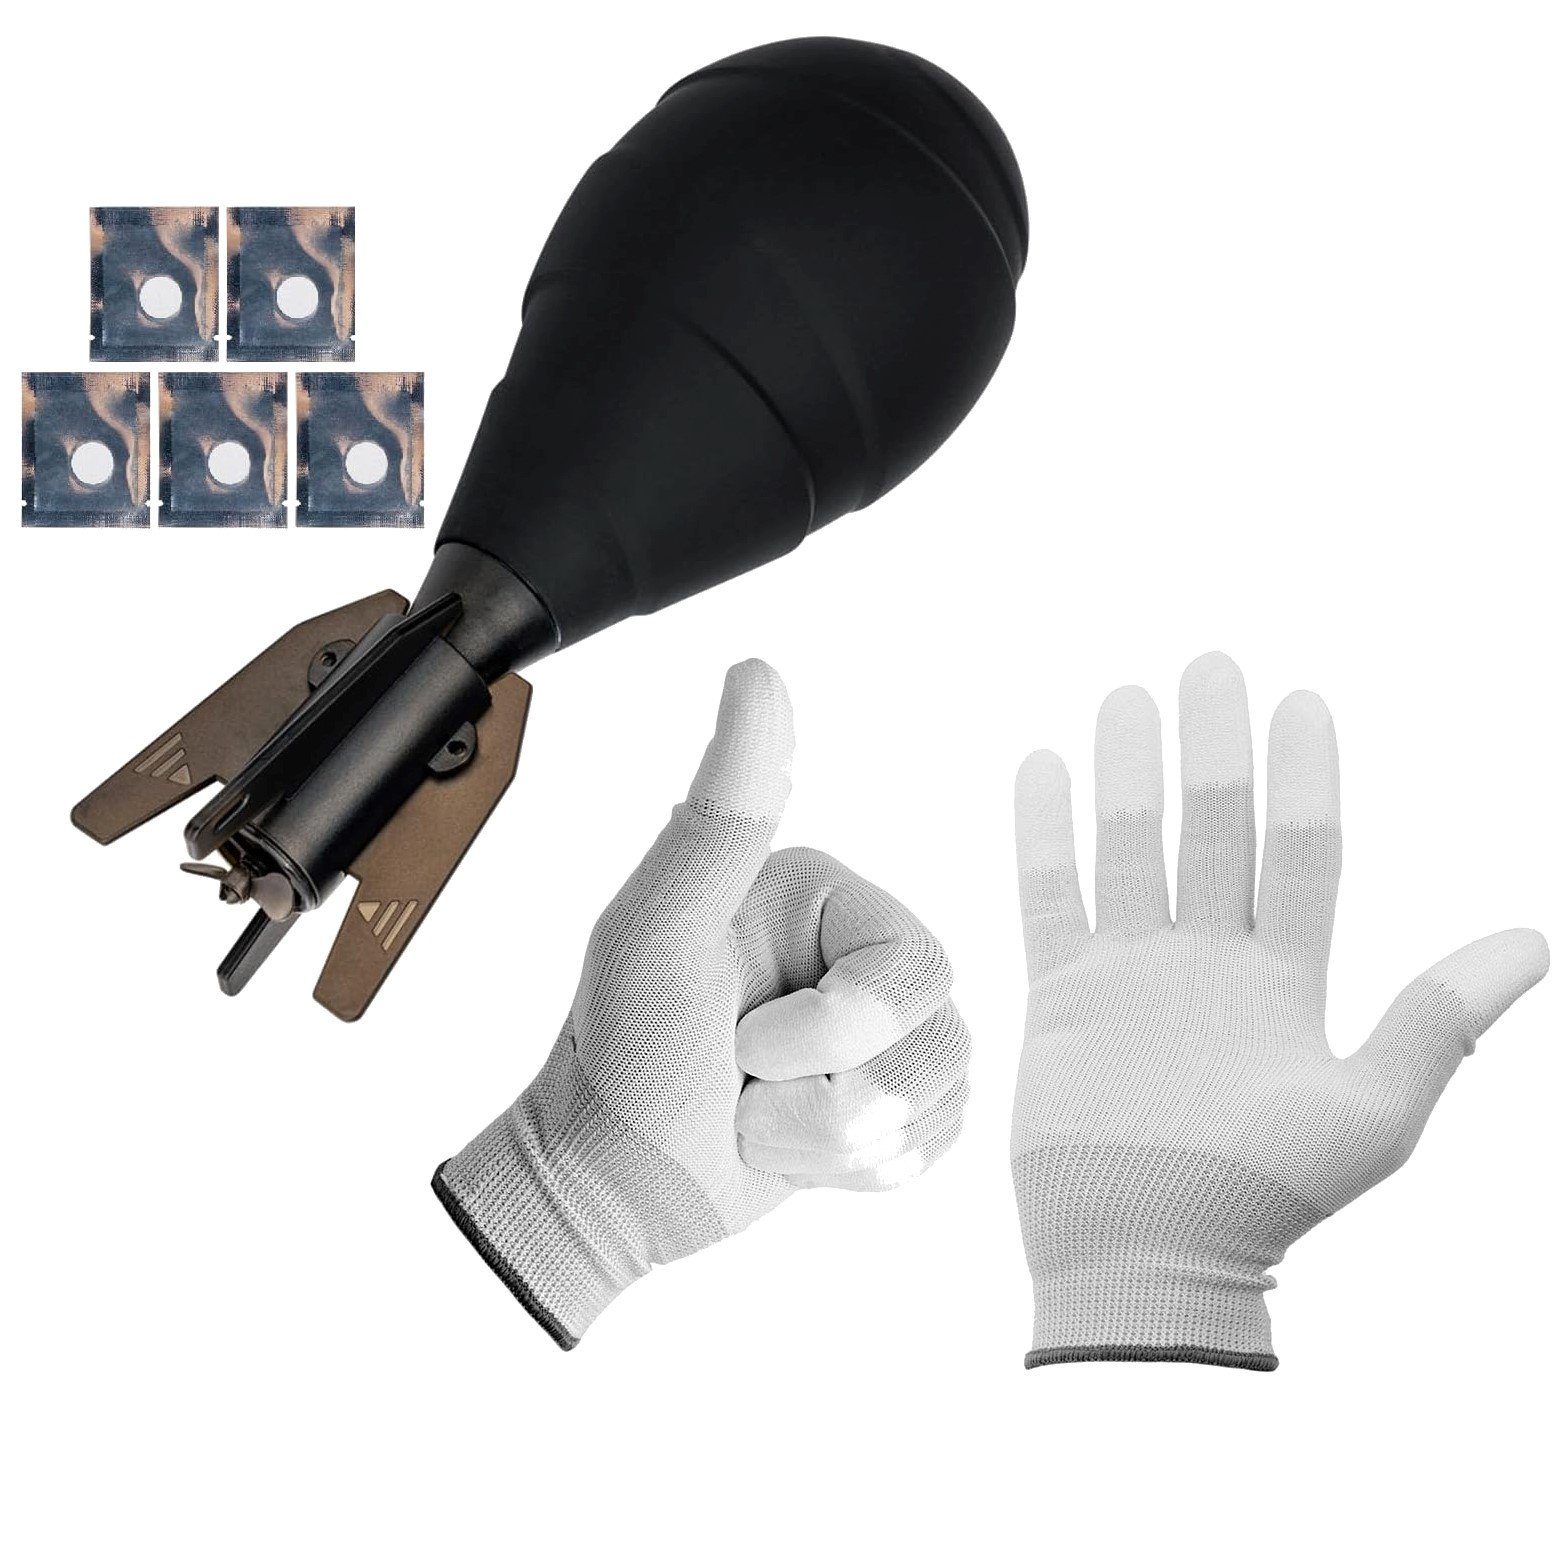 Dust-Free Air Blower Blasebalg Rakete Handschuhe Minadax Kamerazubehör-Set mit Minadax